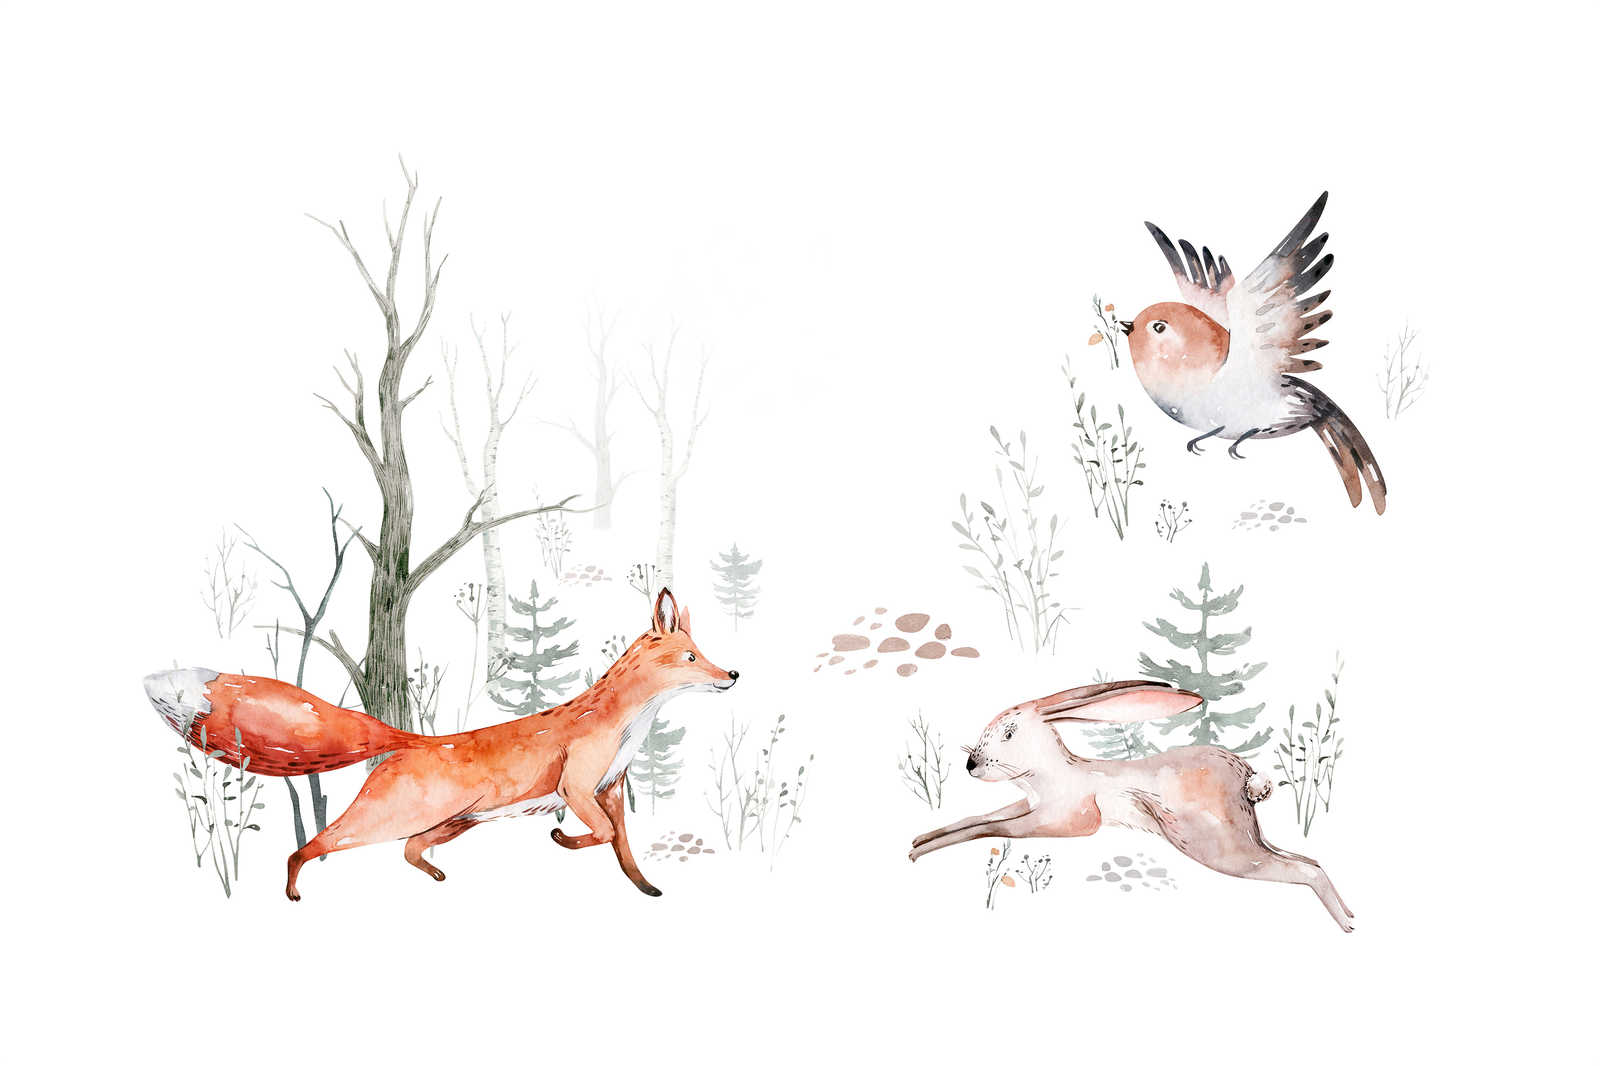             Tableau sur toile avec des animaux dans la forêt pour la chambre d'enfant - 0,90 m x 0,60 m
        